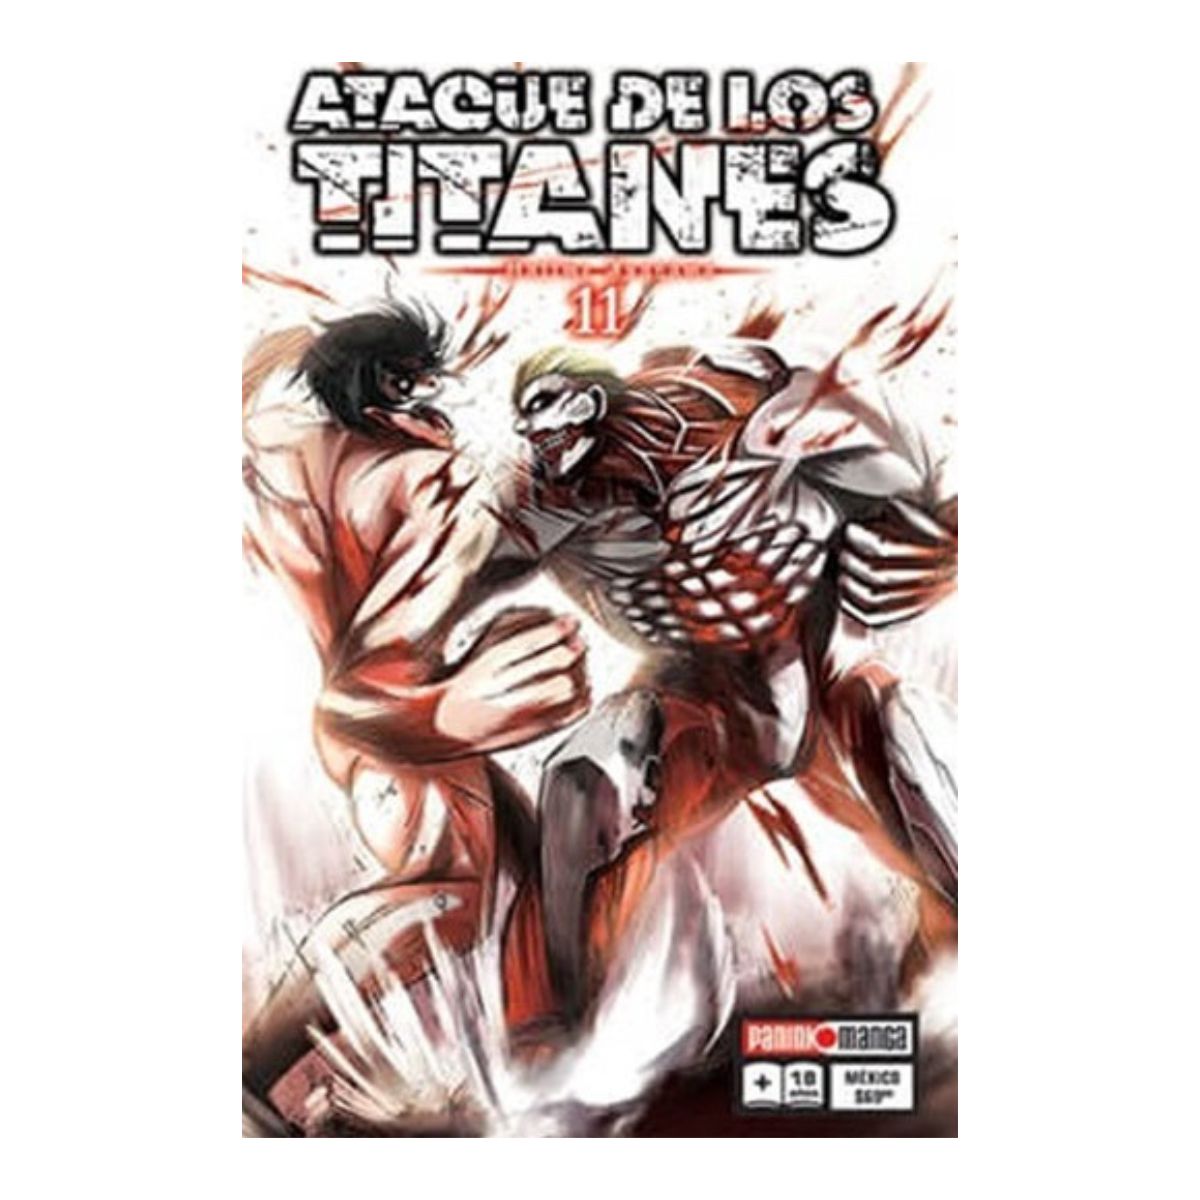 Ataque De Los Titanes Manga Panini Anime Tomo A Elegir